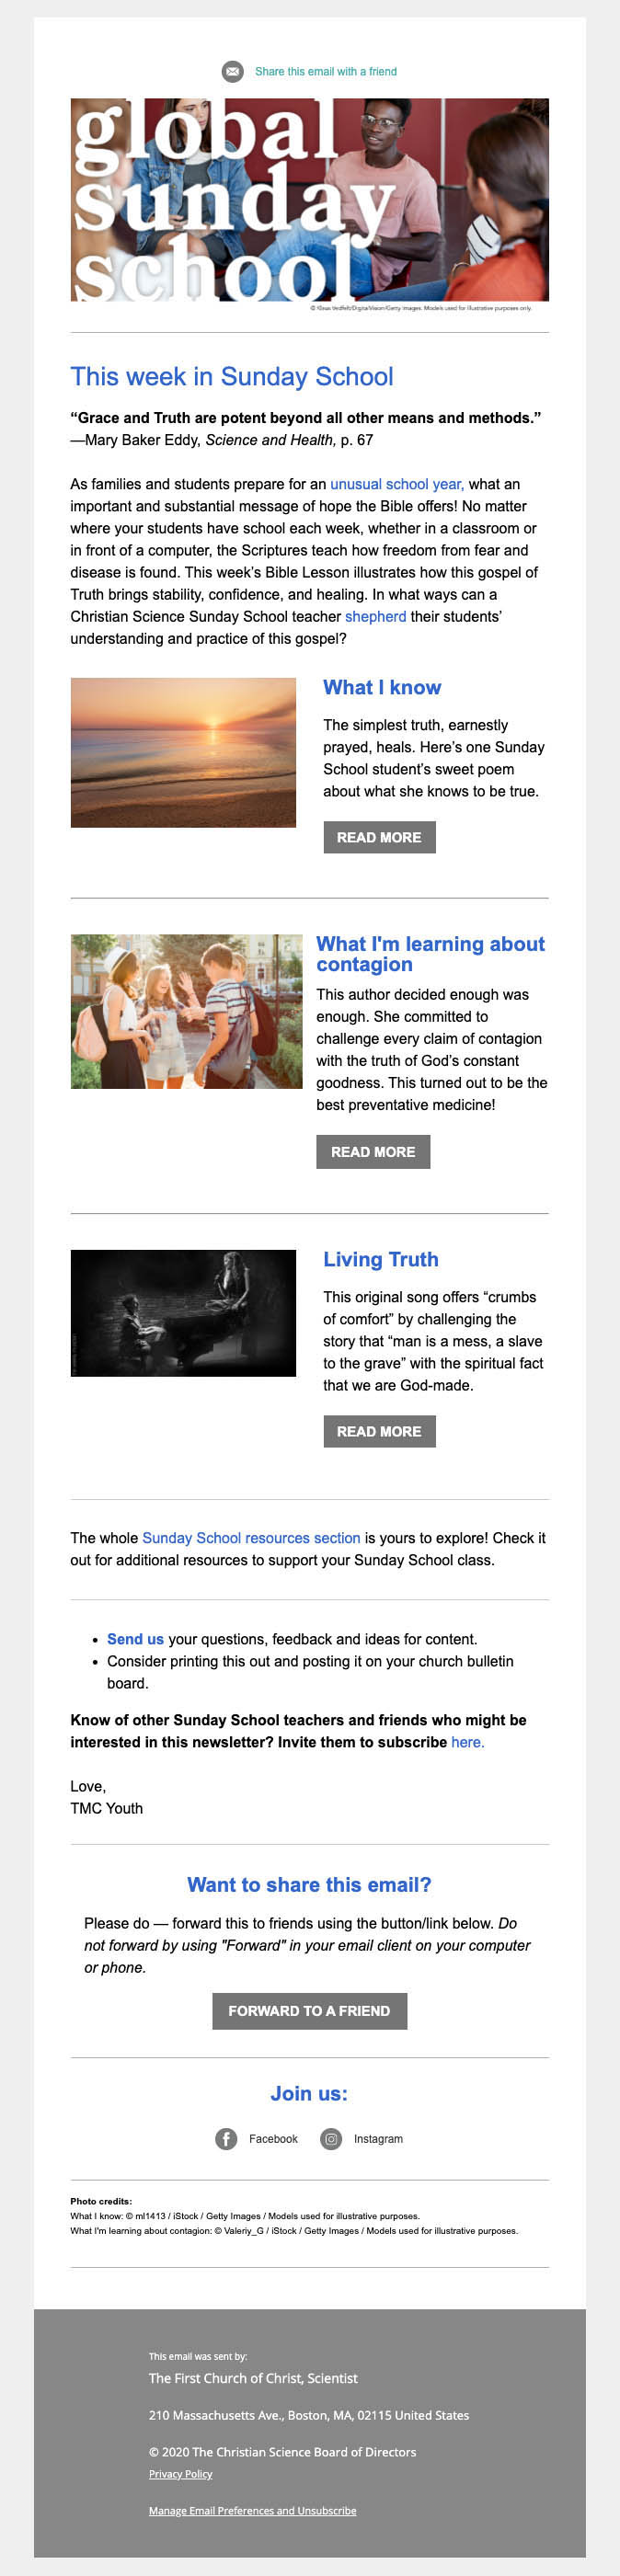 Sample of Global Sunday School newsletter